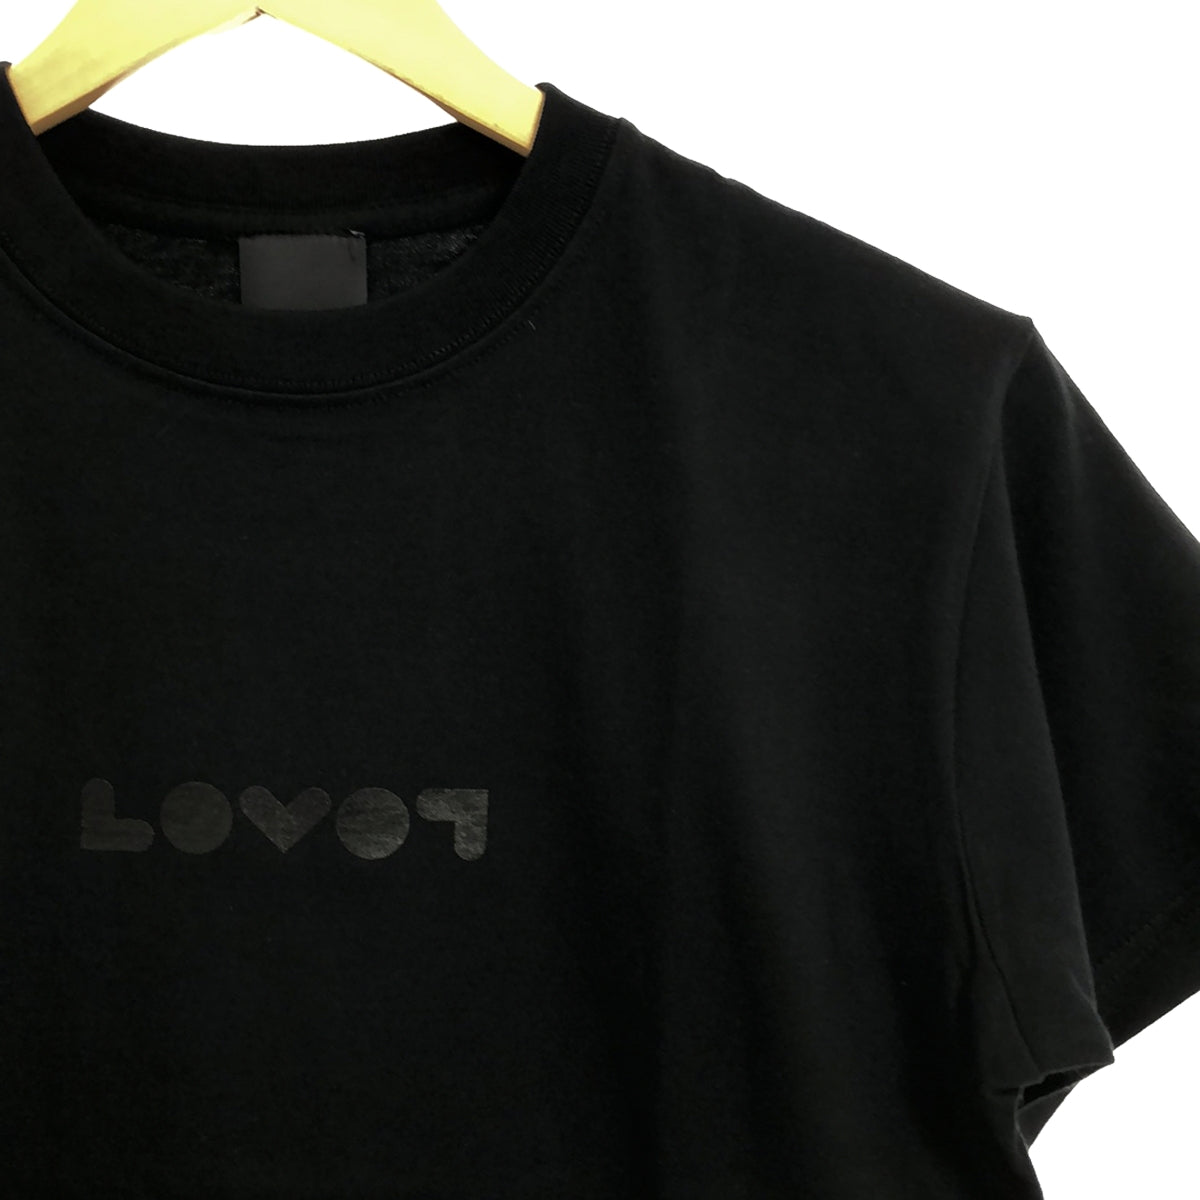 FRAGMENT DESIGN / フラグメントデザイン | × LOVOT / ラボット 両面ロゴ クルーネック Tシャツ | S | レディース